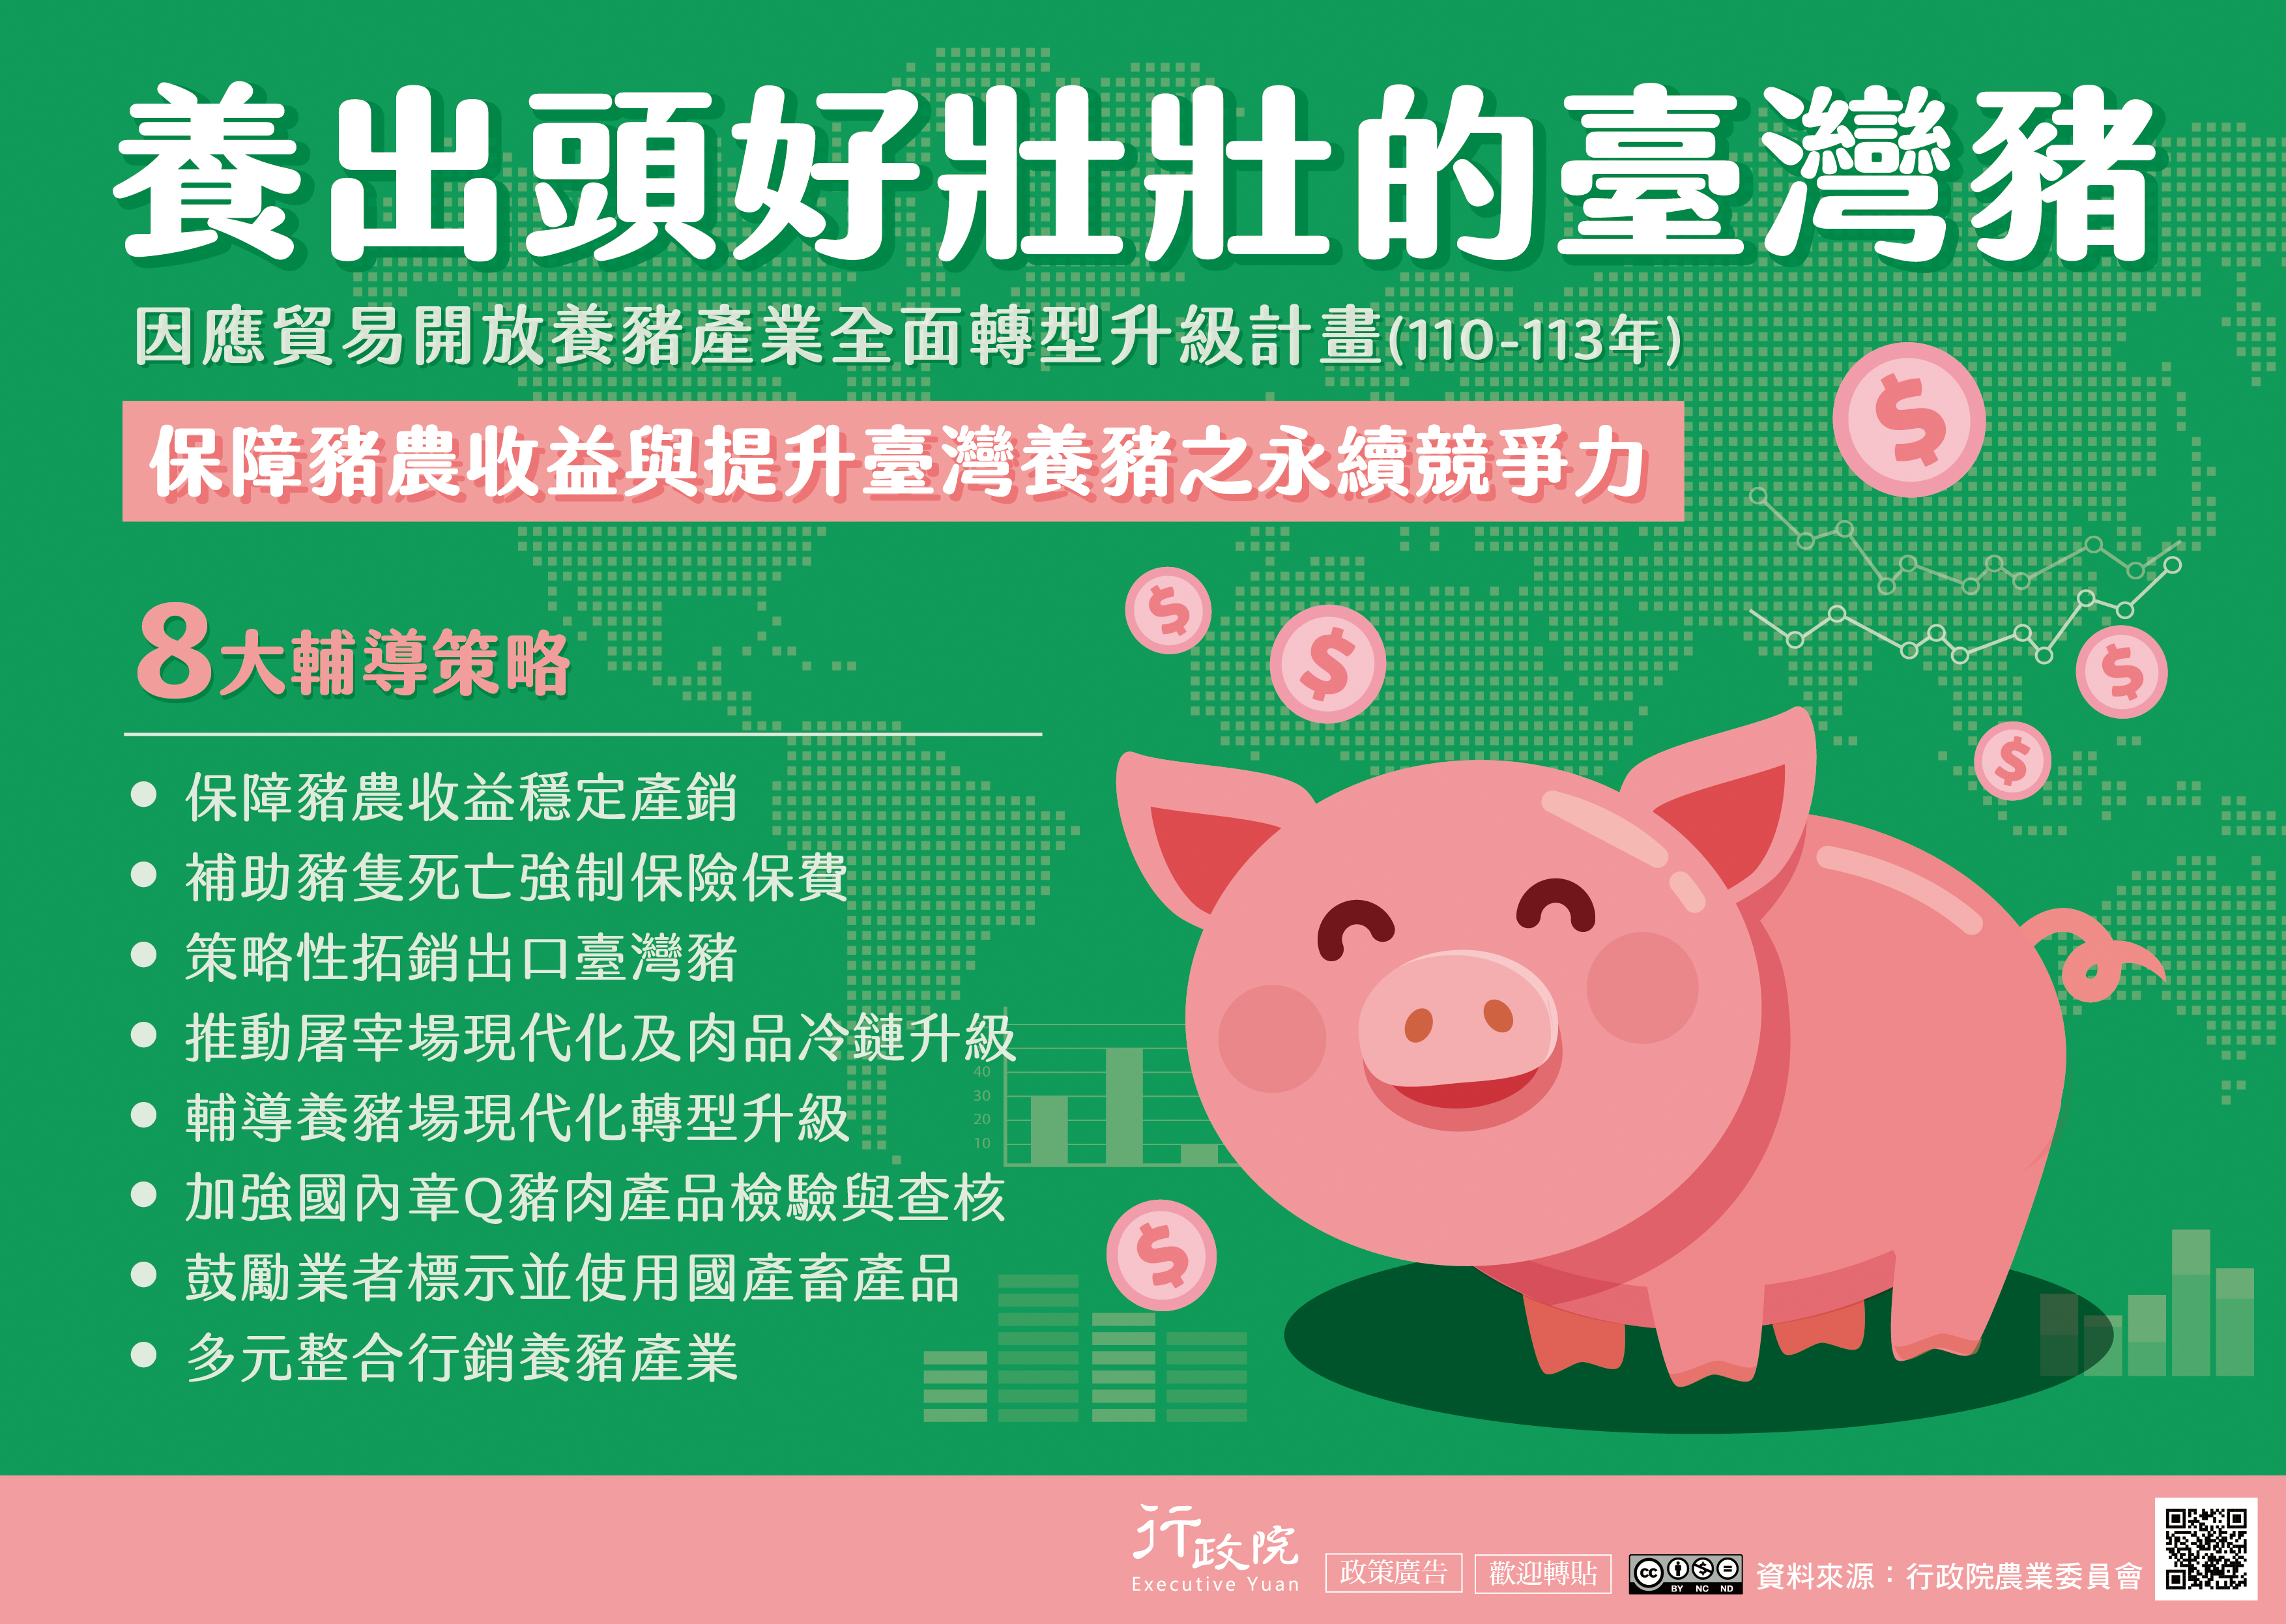 養豬產業全面轉型升級政策